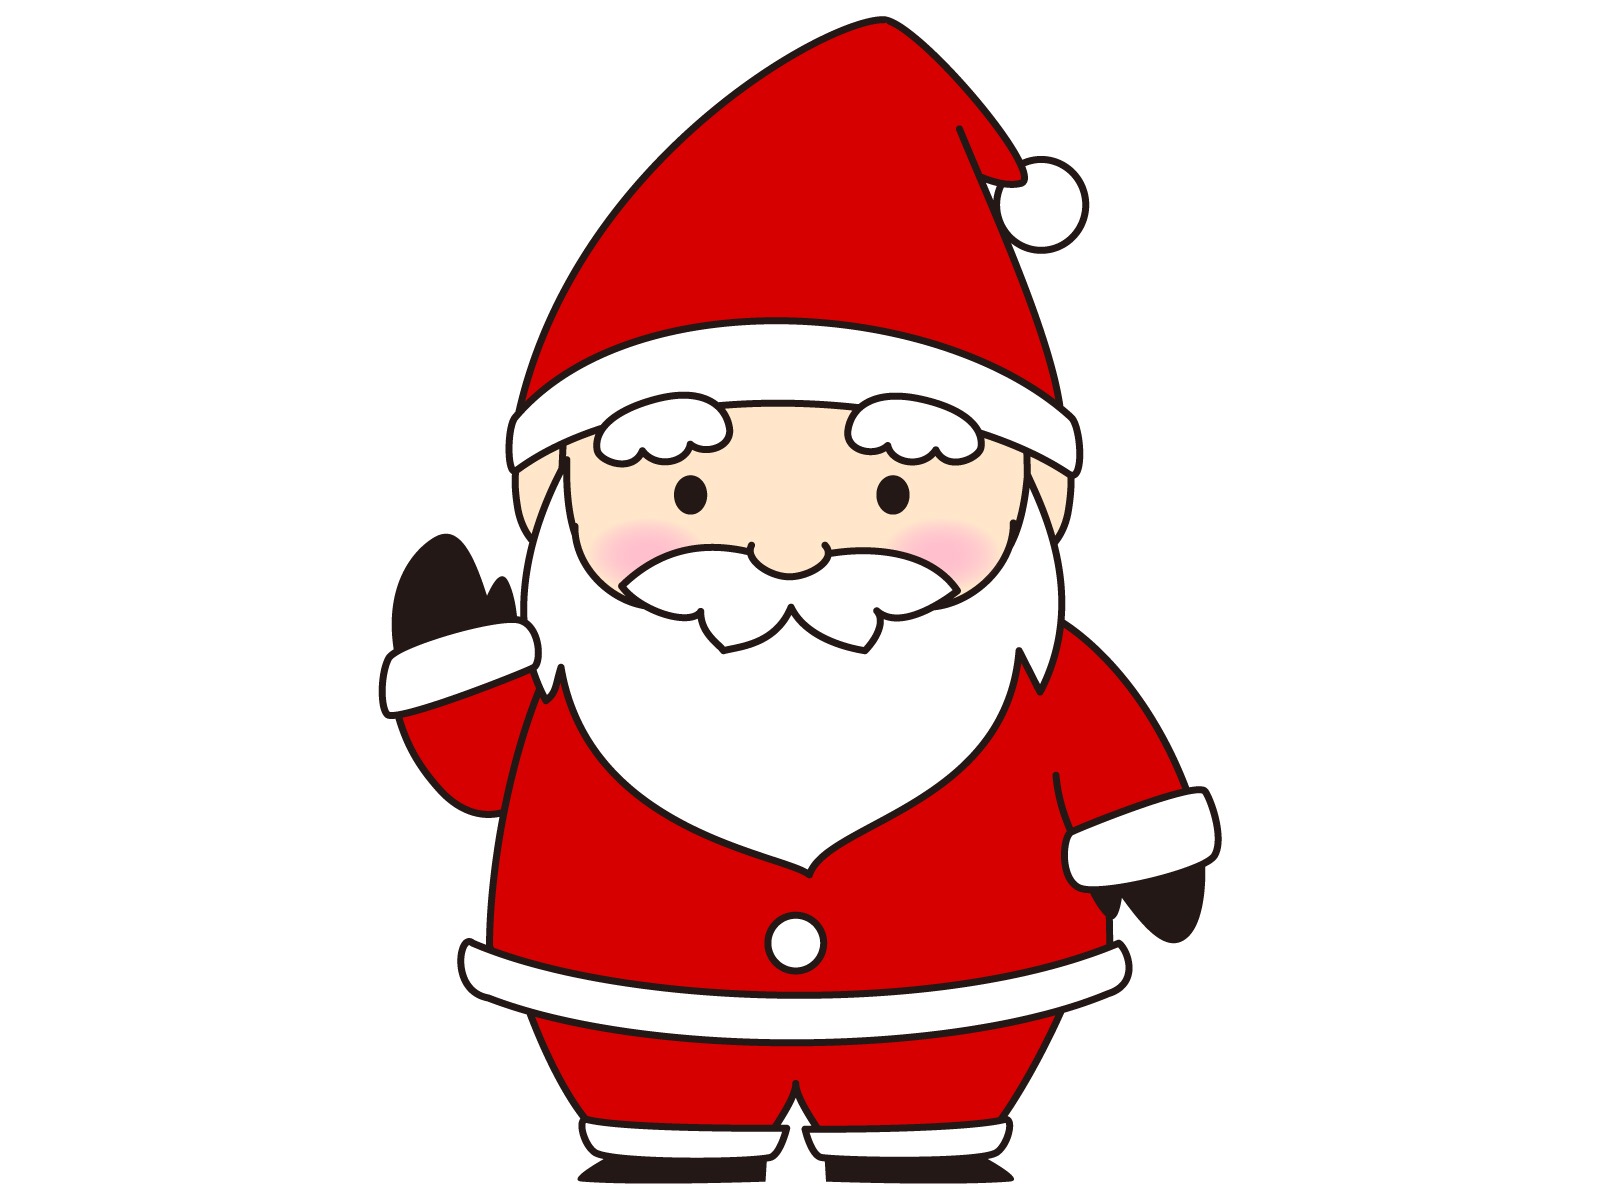 12月24日はイオンモール草津にサンタクロースがやってくる！サンタさんを見つけて一緒に写真を撮ろう♪